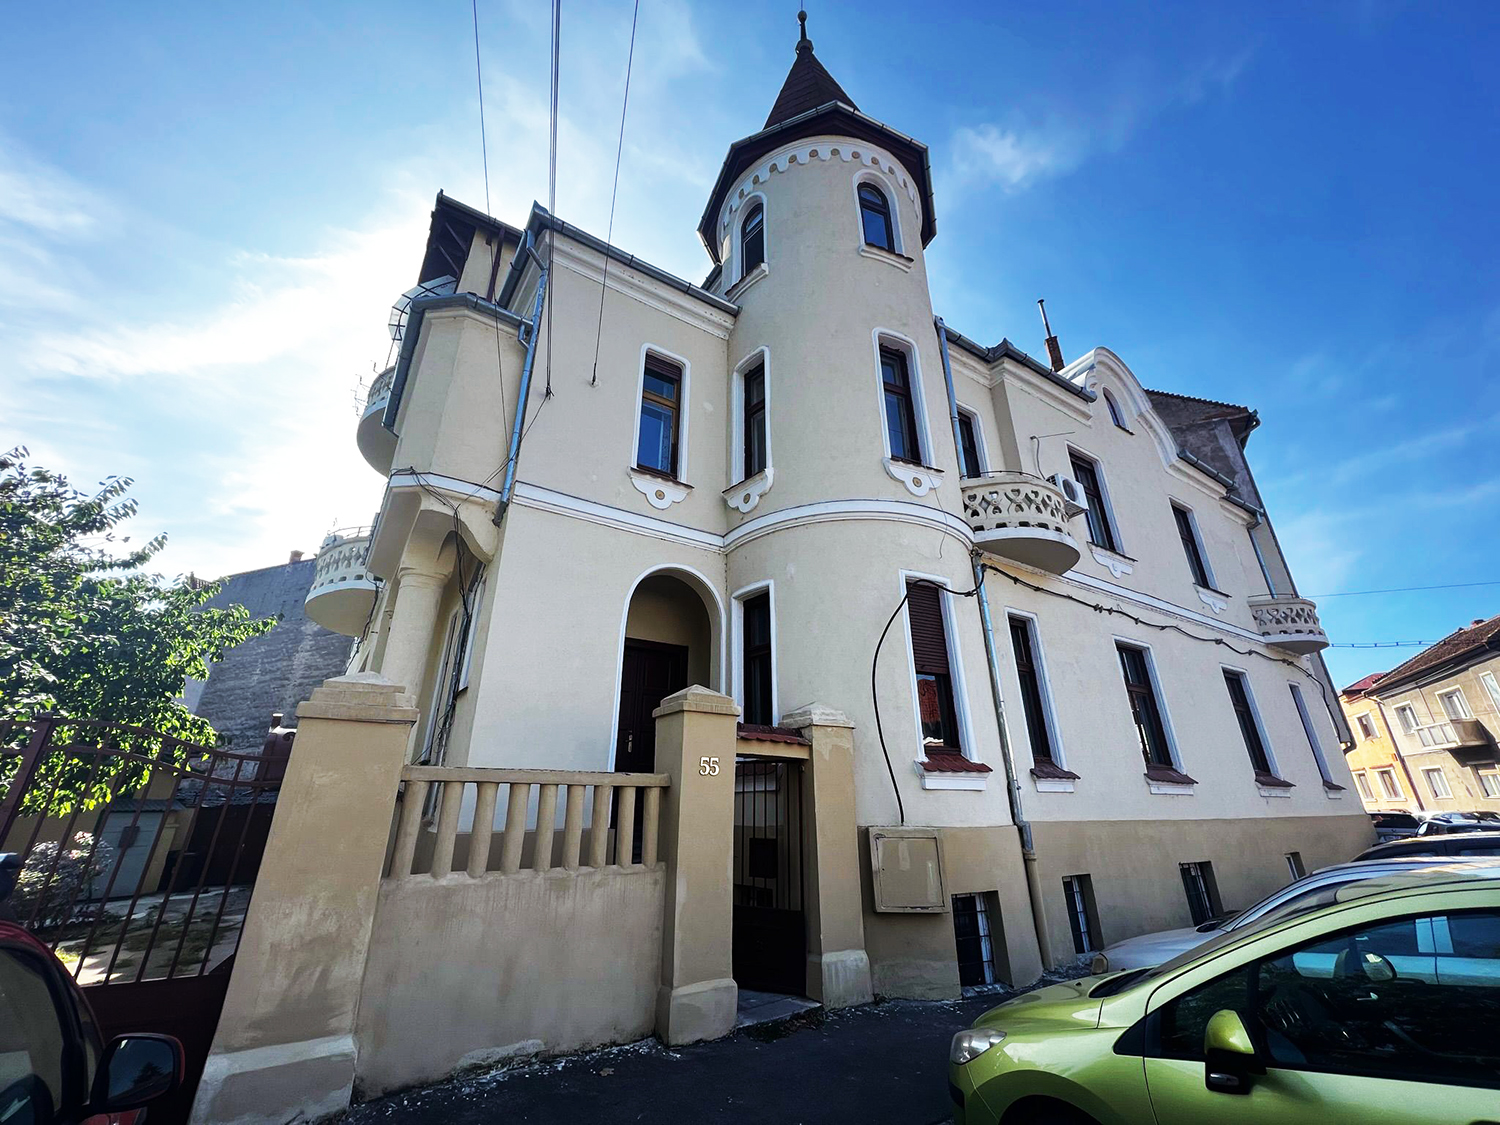 Apartament / Birou intr-o cladire istorica - Str. G. Enescu - 84.900 €